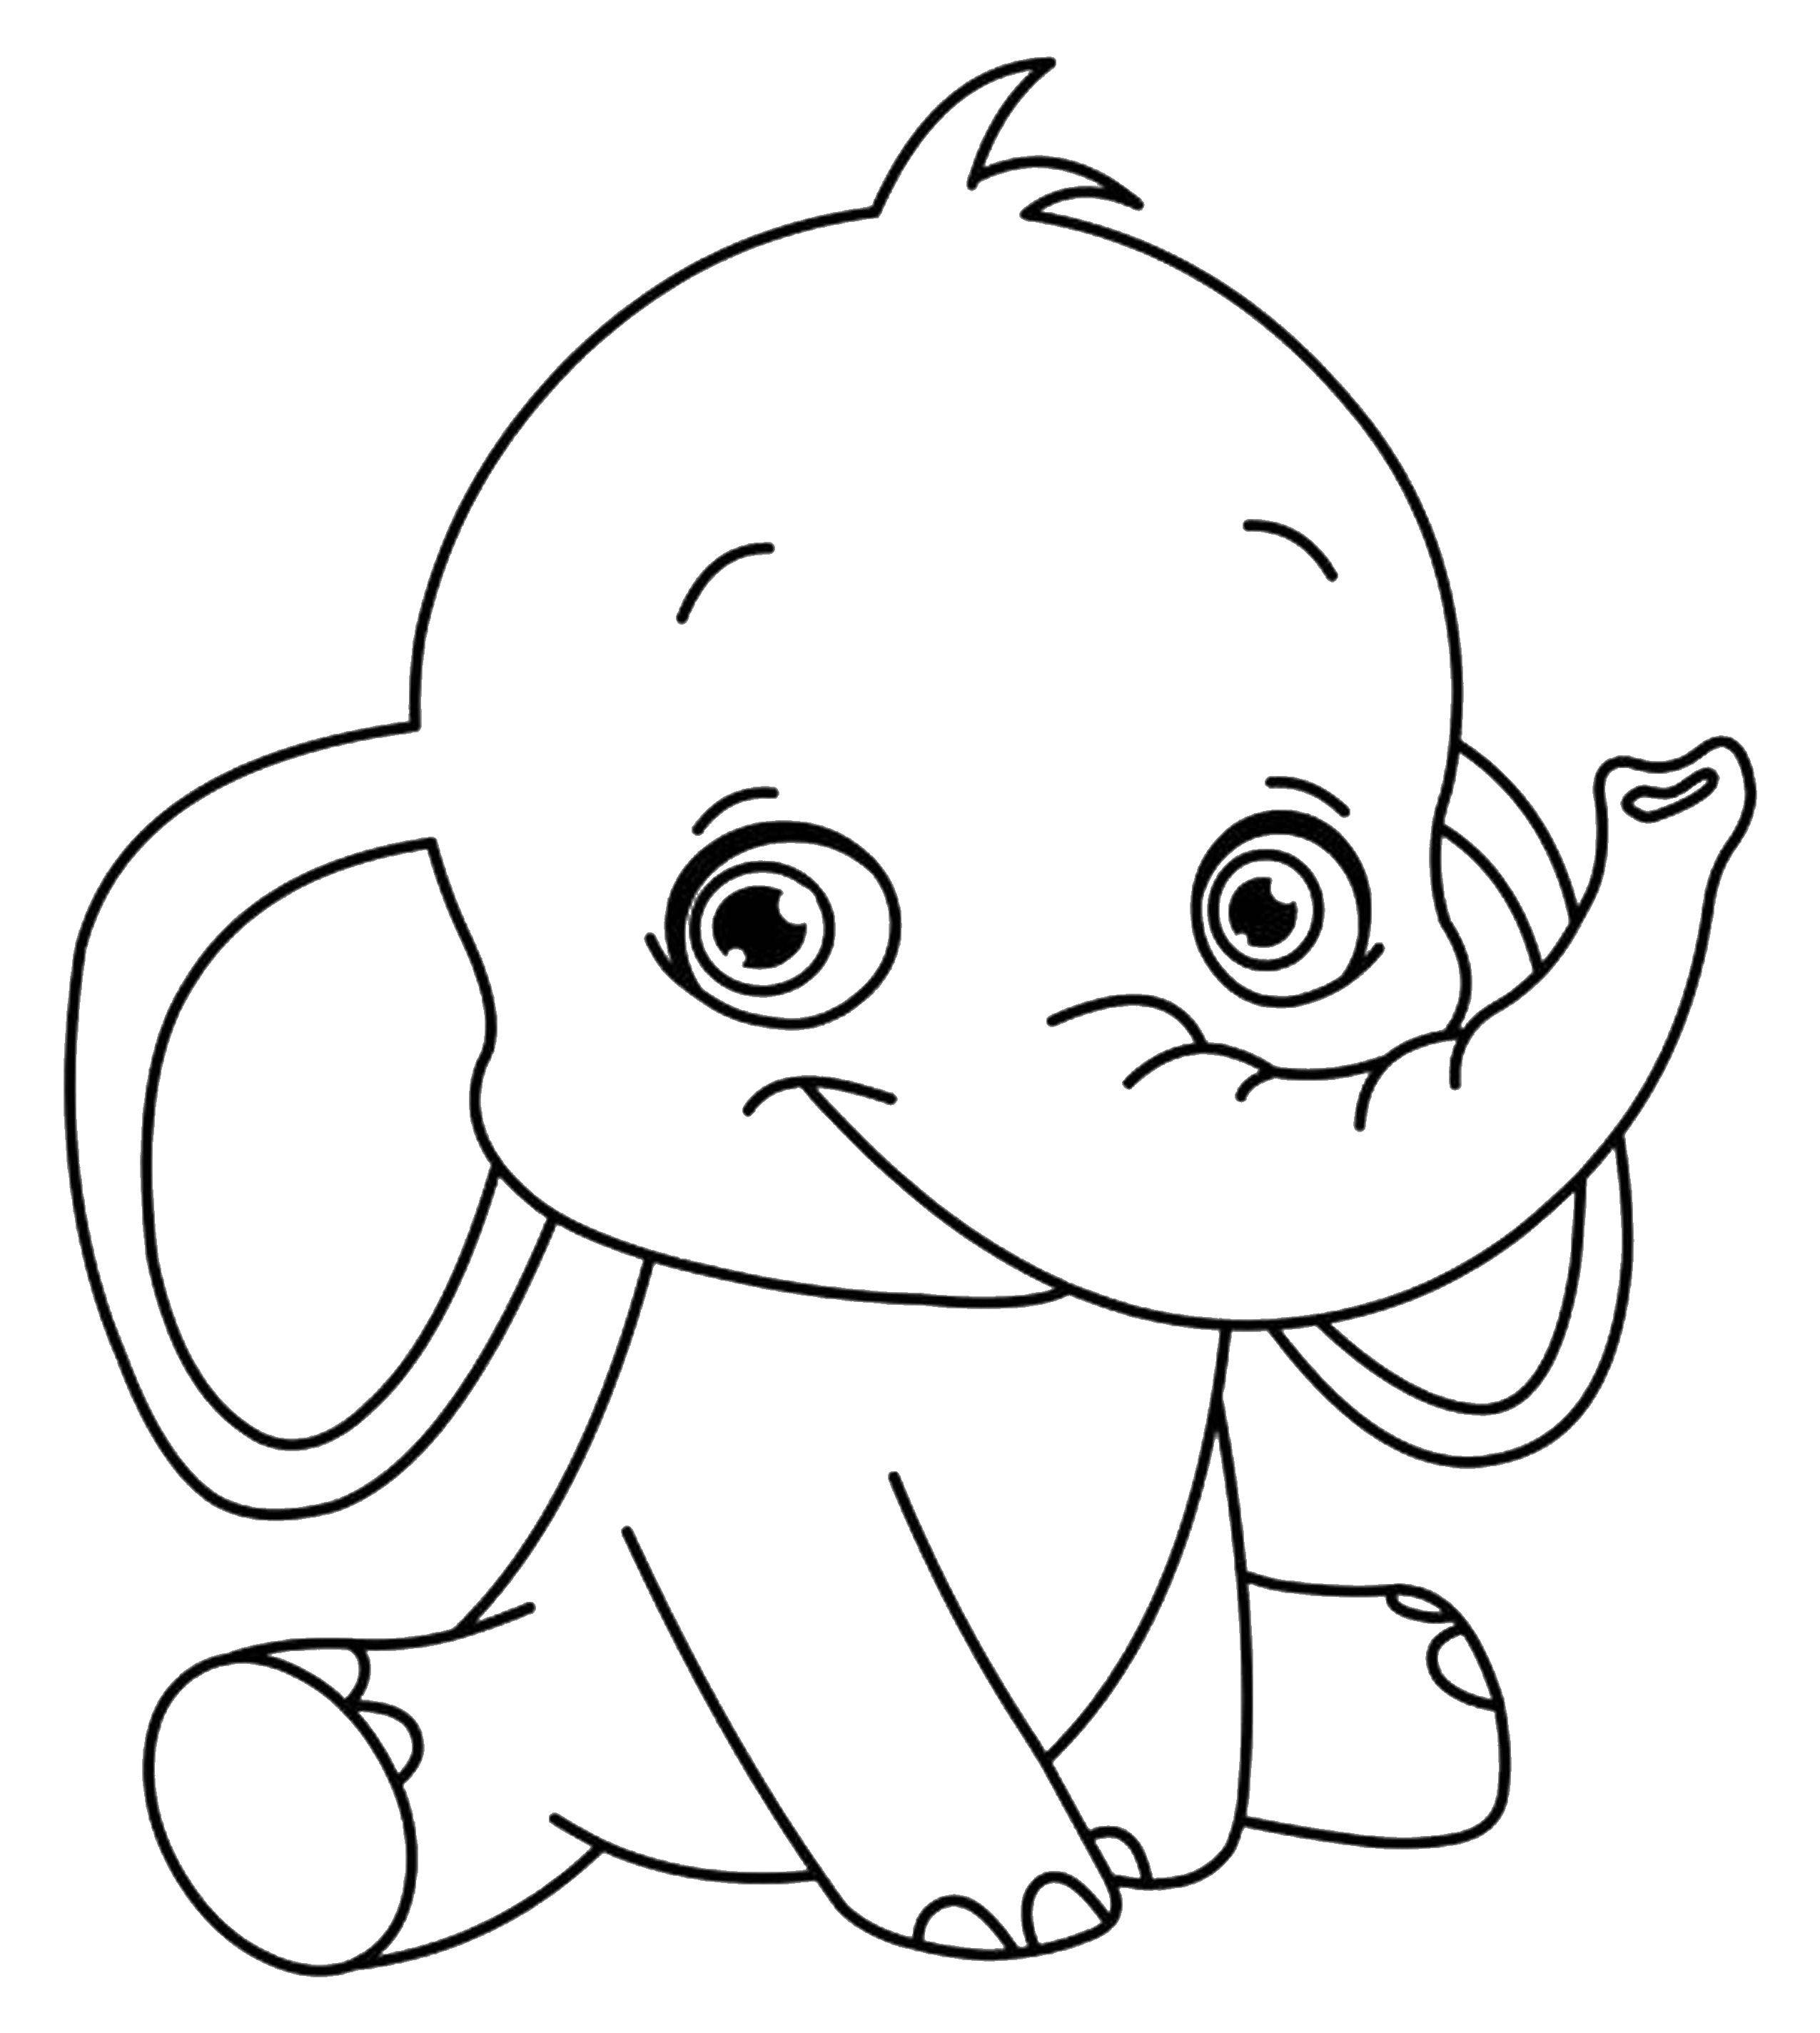 Название: Раскраска Дамбо. Категория: Диснеевские мультфильмы. Теги: слоненок, Дамбо, хобот.